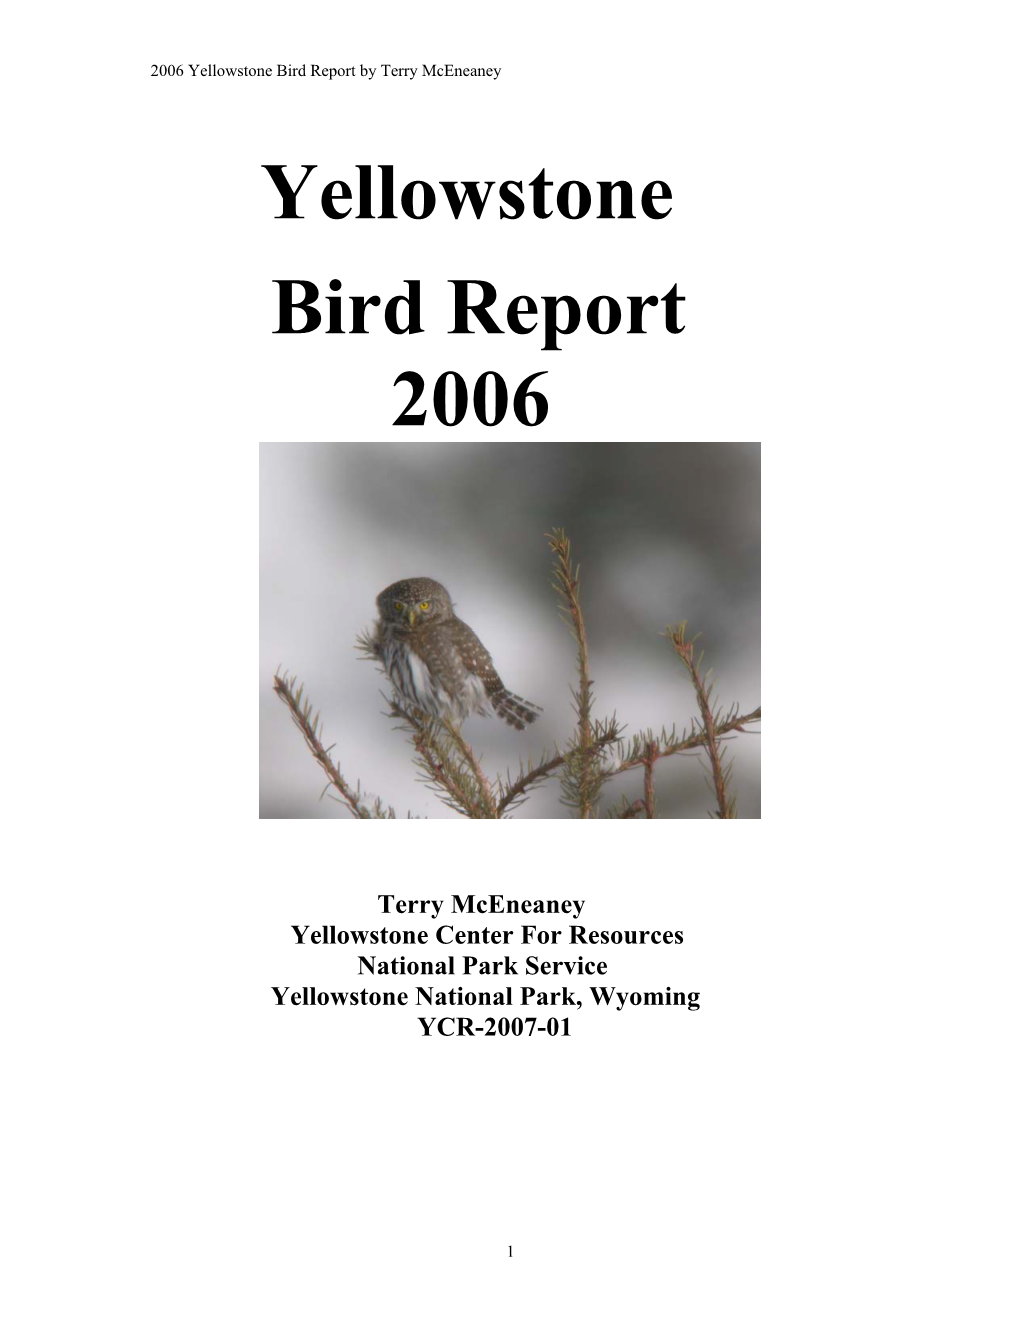 2002 Yellowstone Bird Report